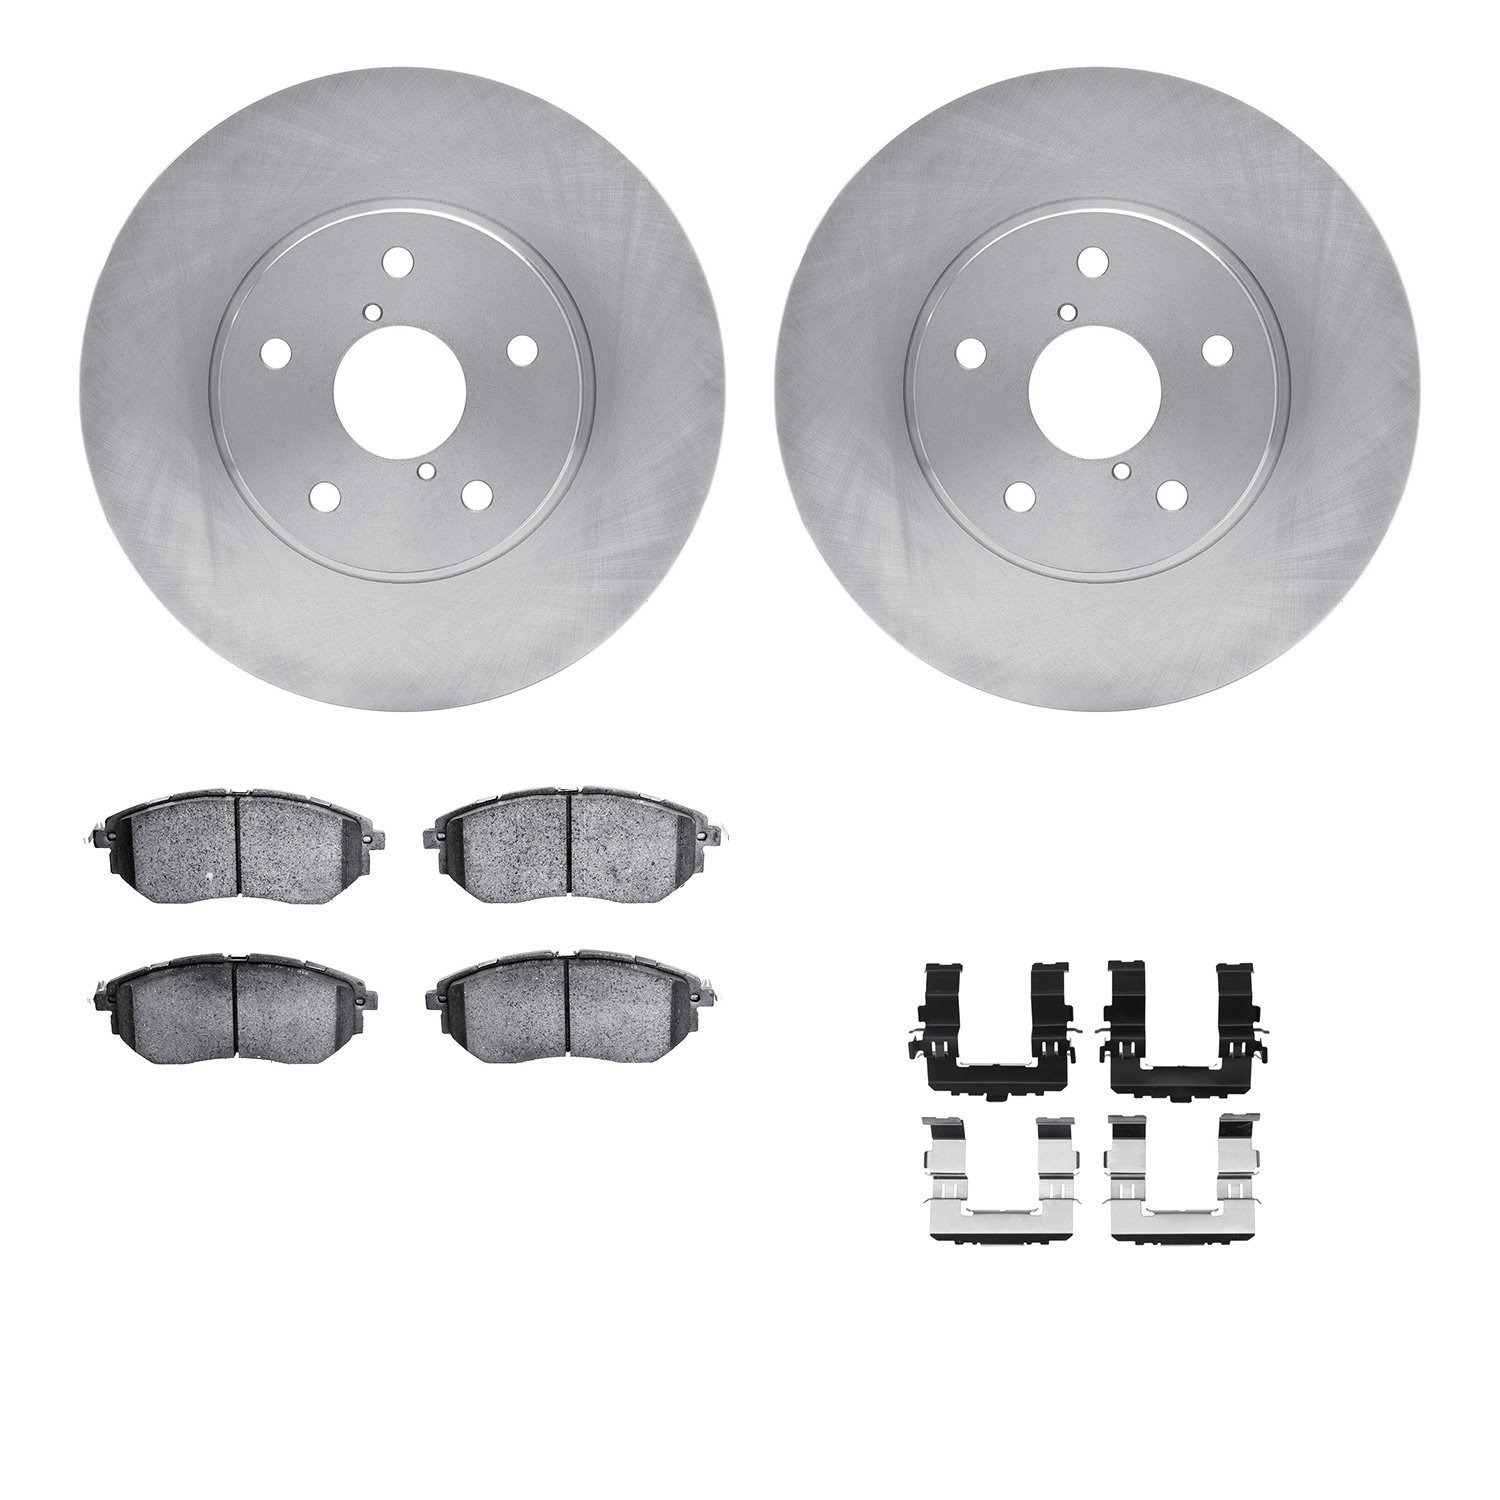 6612-13035 Brake Rotors w/5000 Euro Ceramic Brake Pads Kit with Hardware, 2015-2015 Subaru, Position: Front